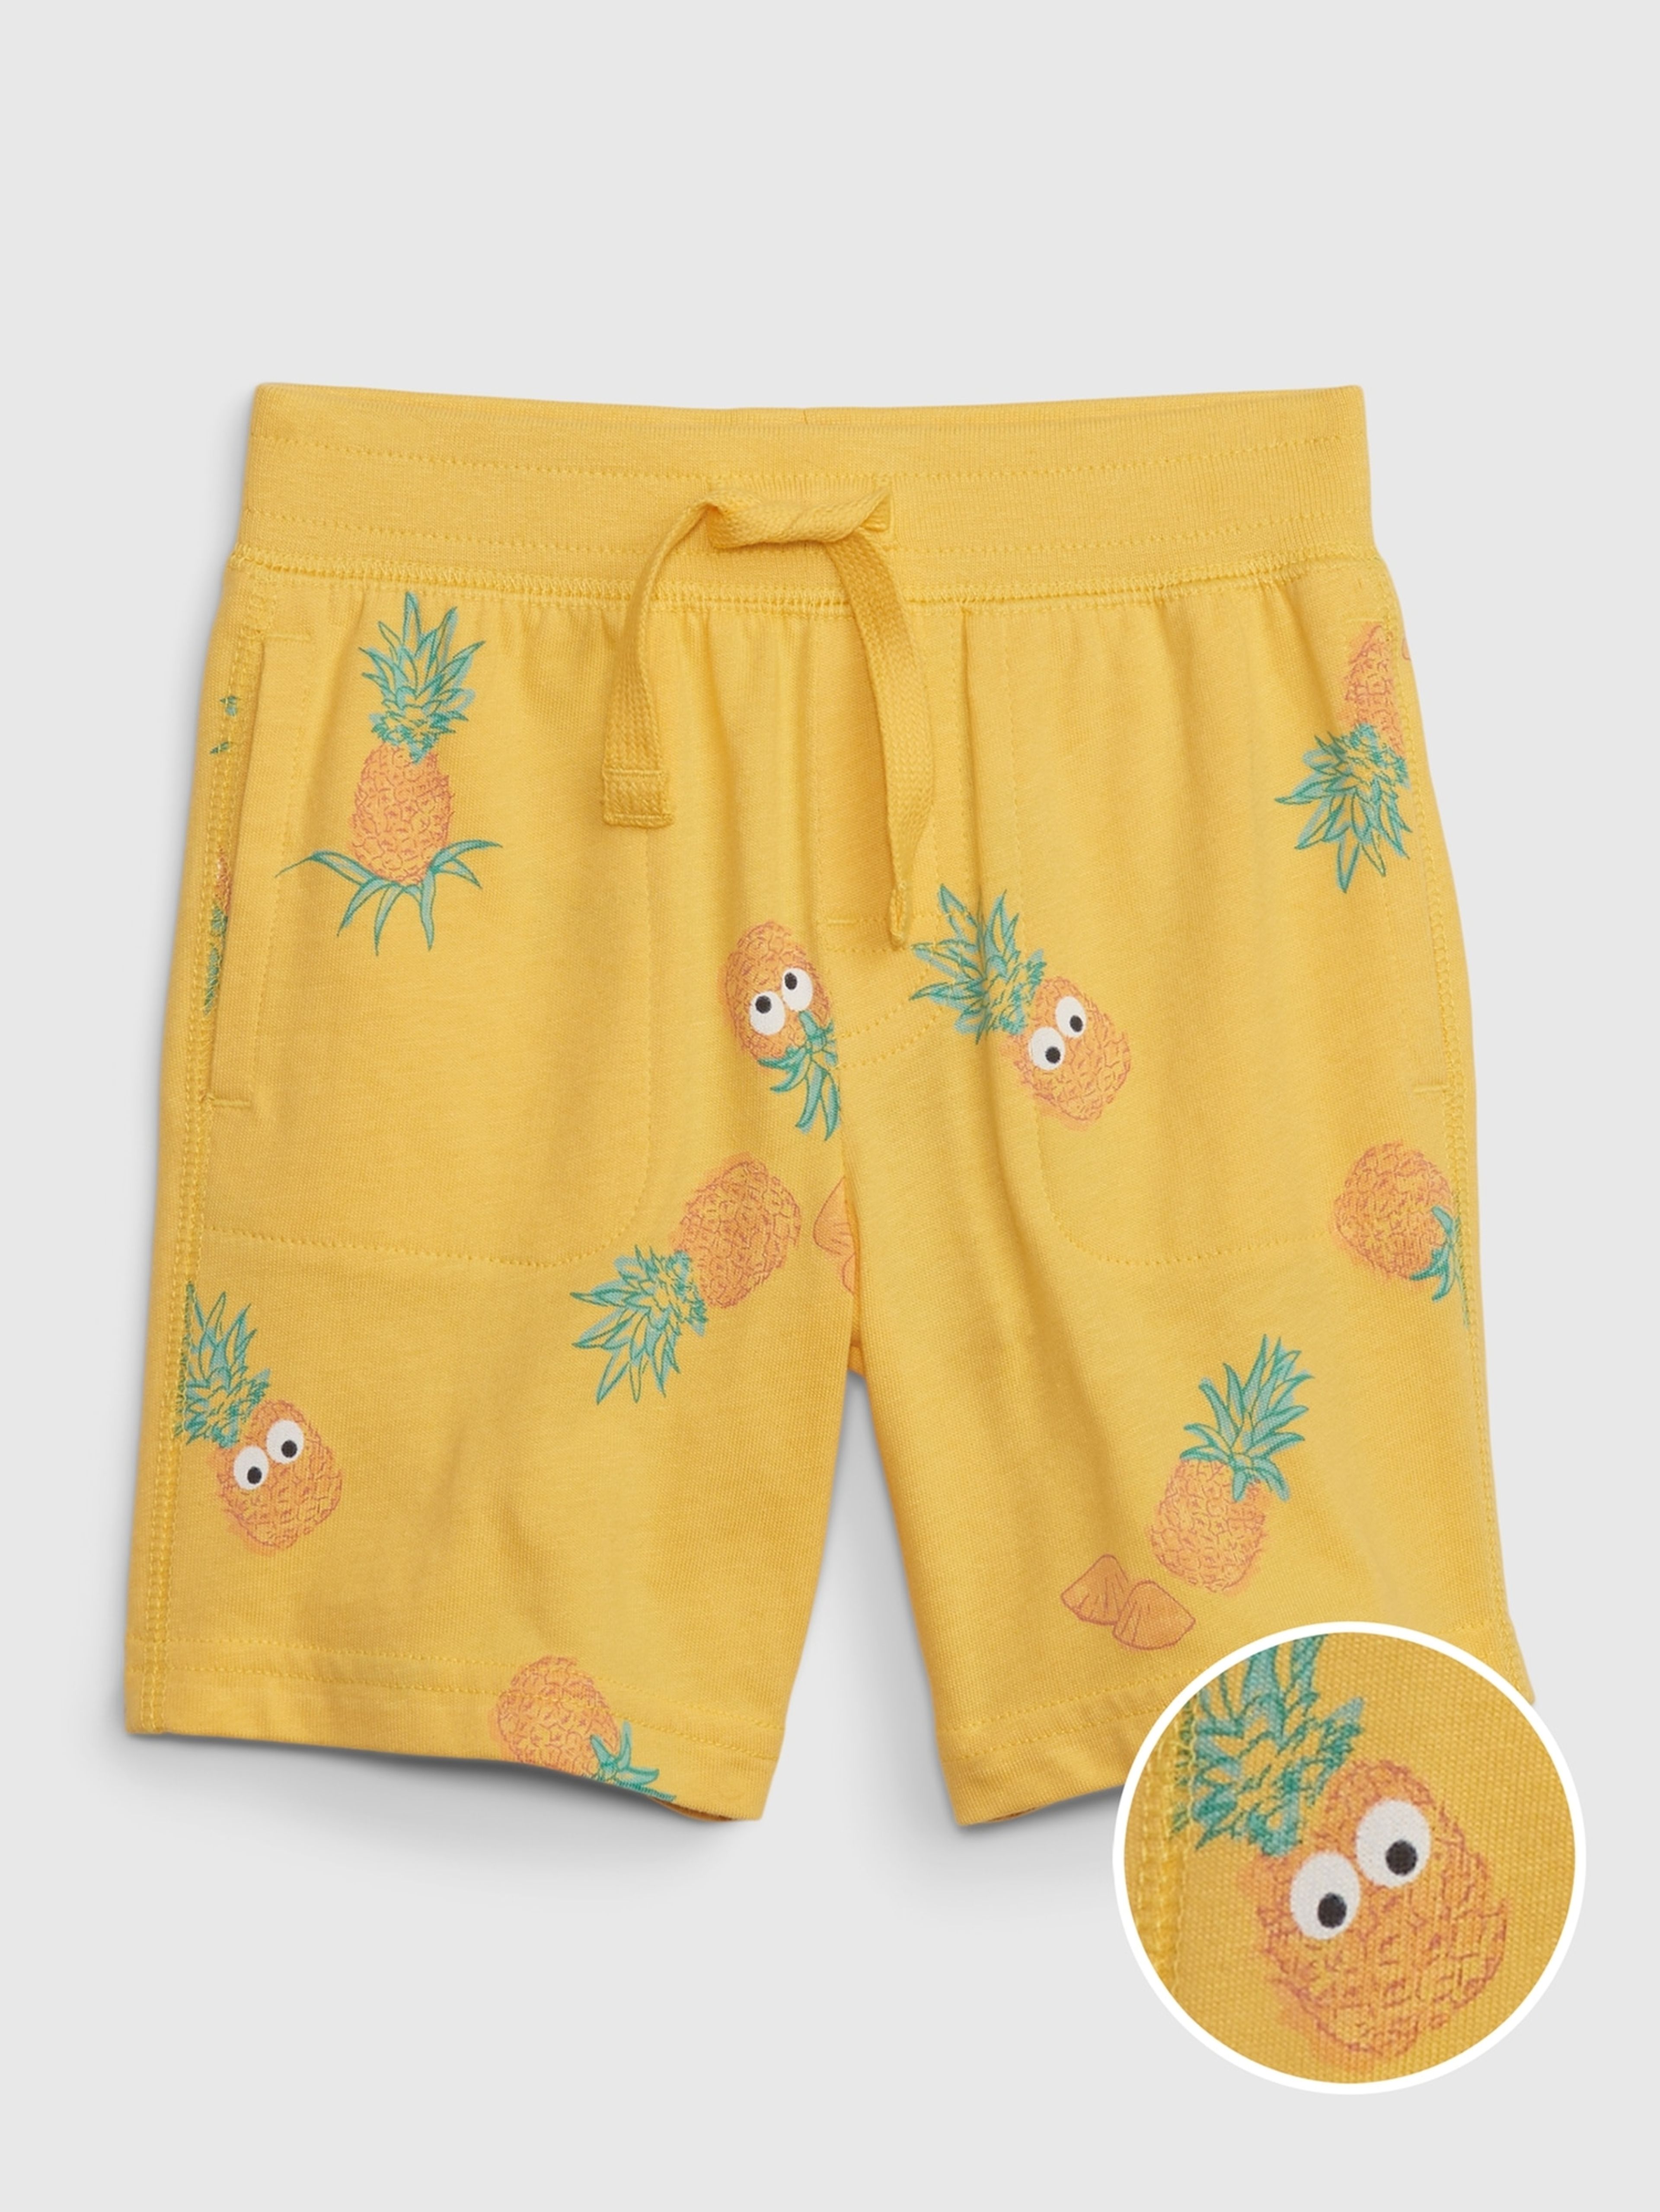 Gemusterte Shorts für Kinder